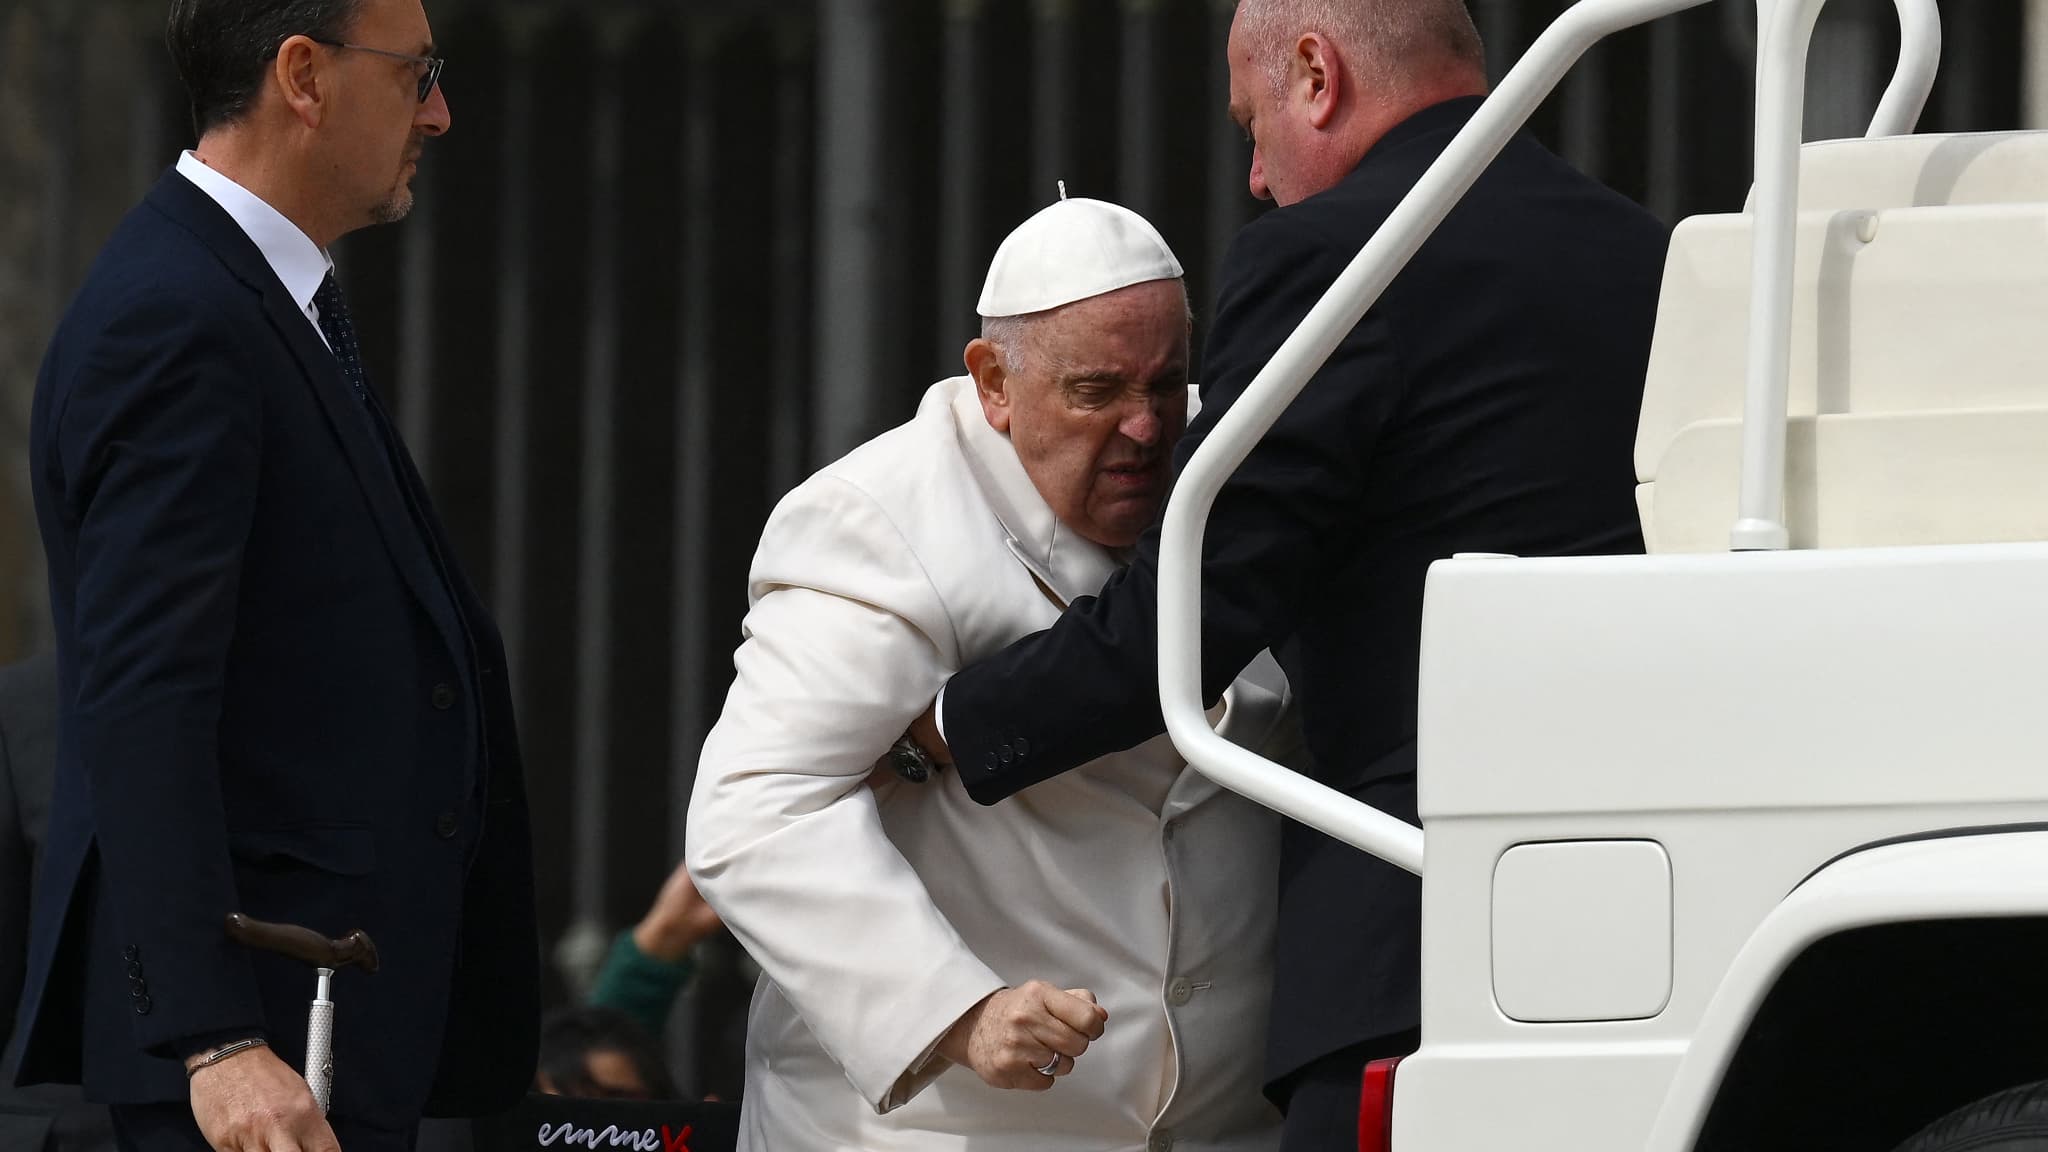 De bezorgdheid groeit over de gezondheid van de paus, die met een luchtweginfectie in het ziekenhuis ligt